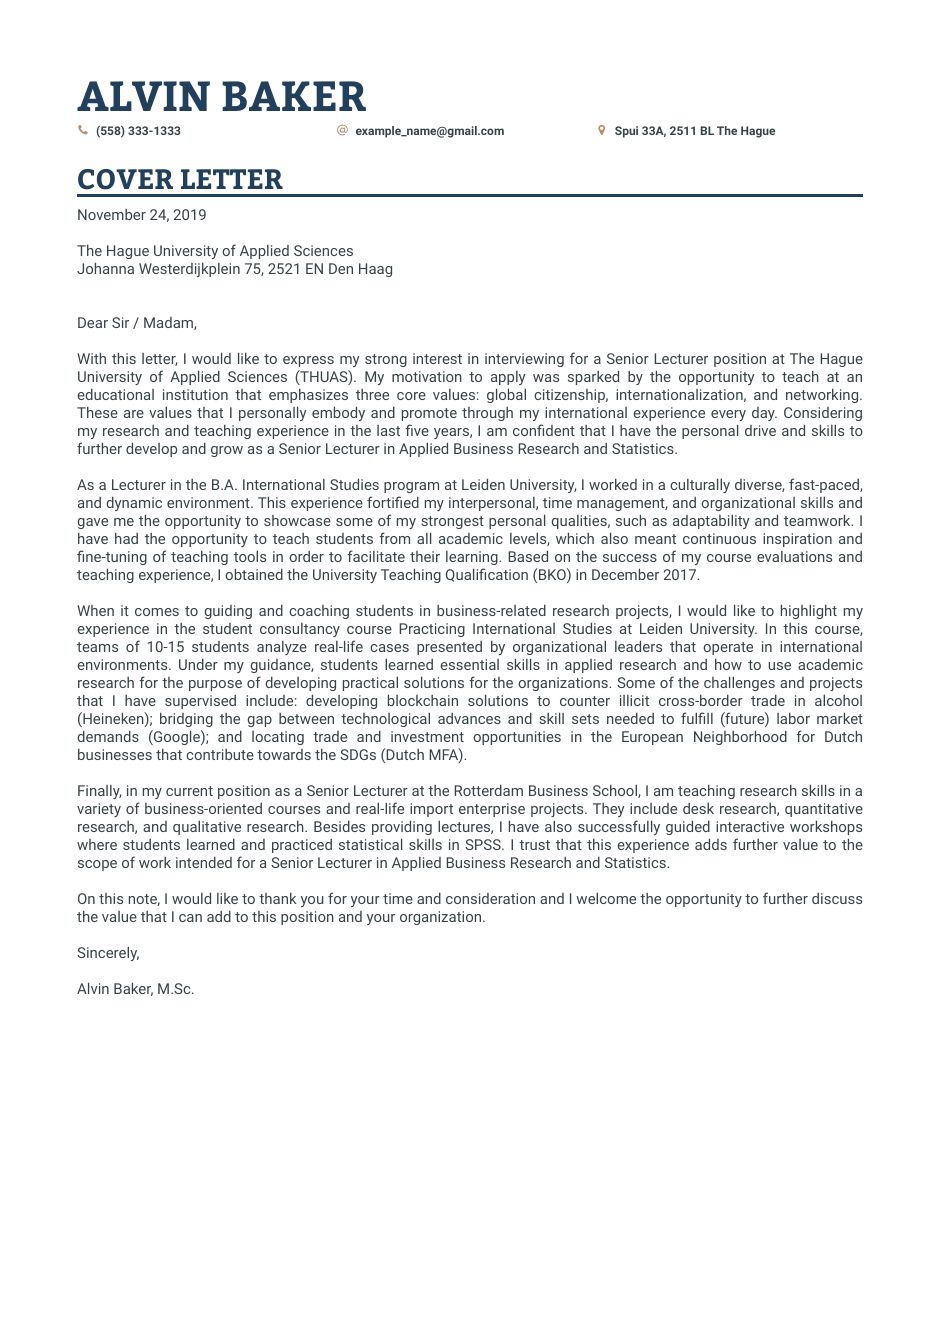 cover letter for teaching position in university